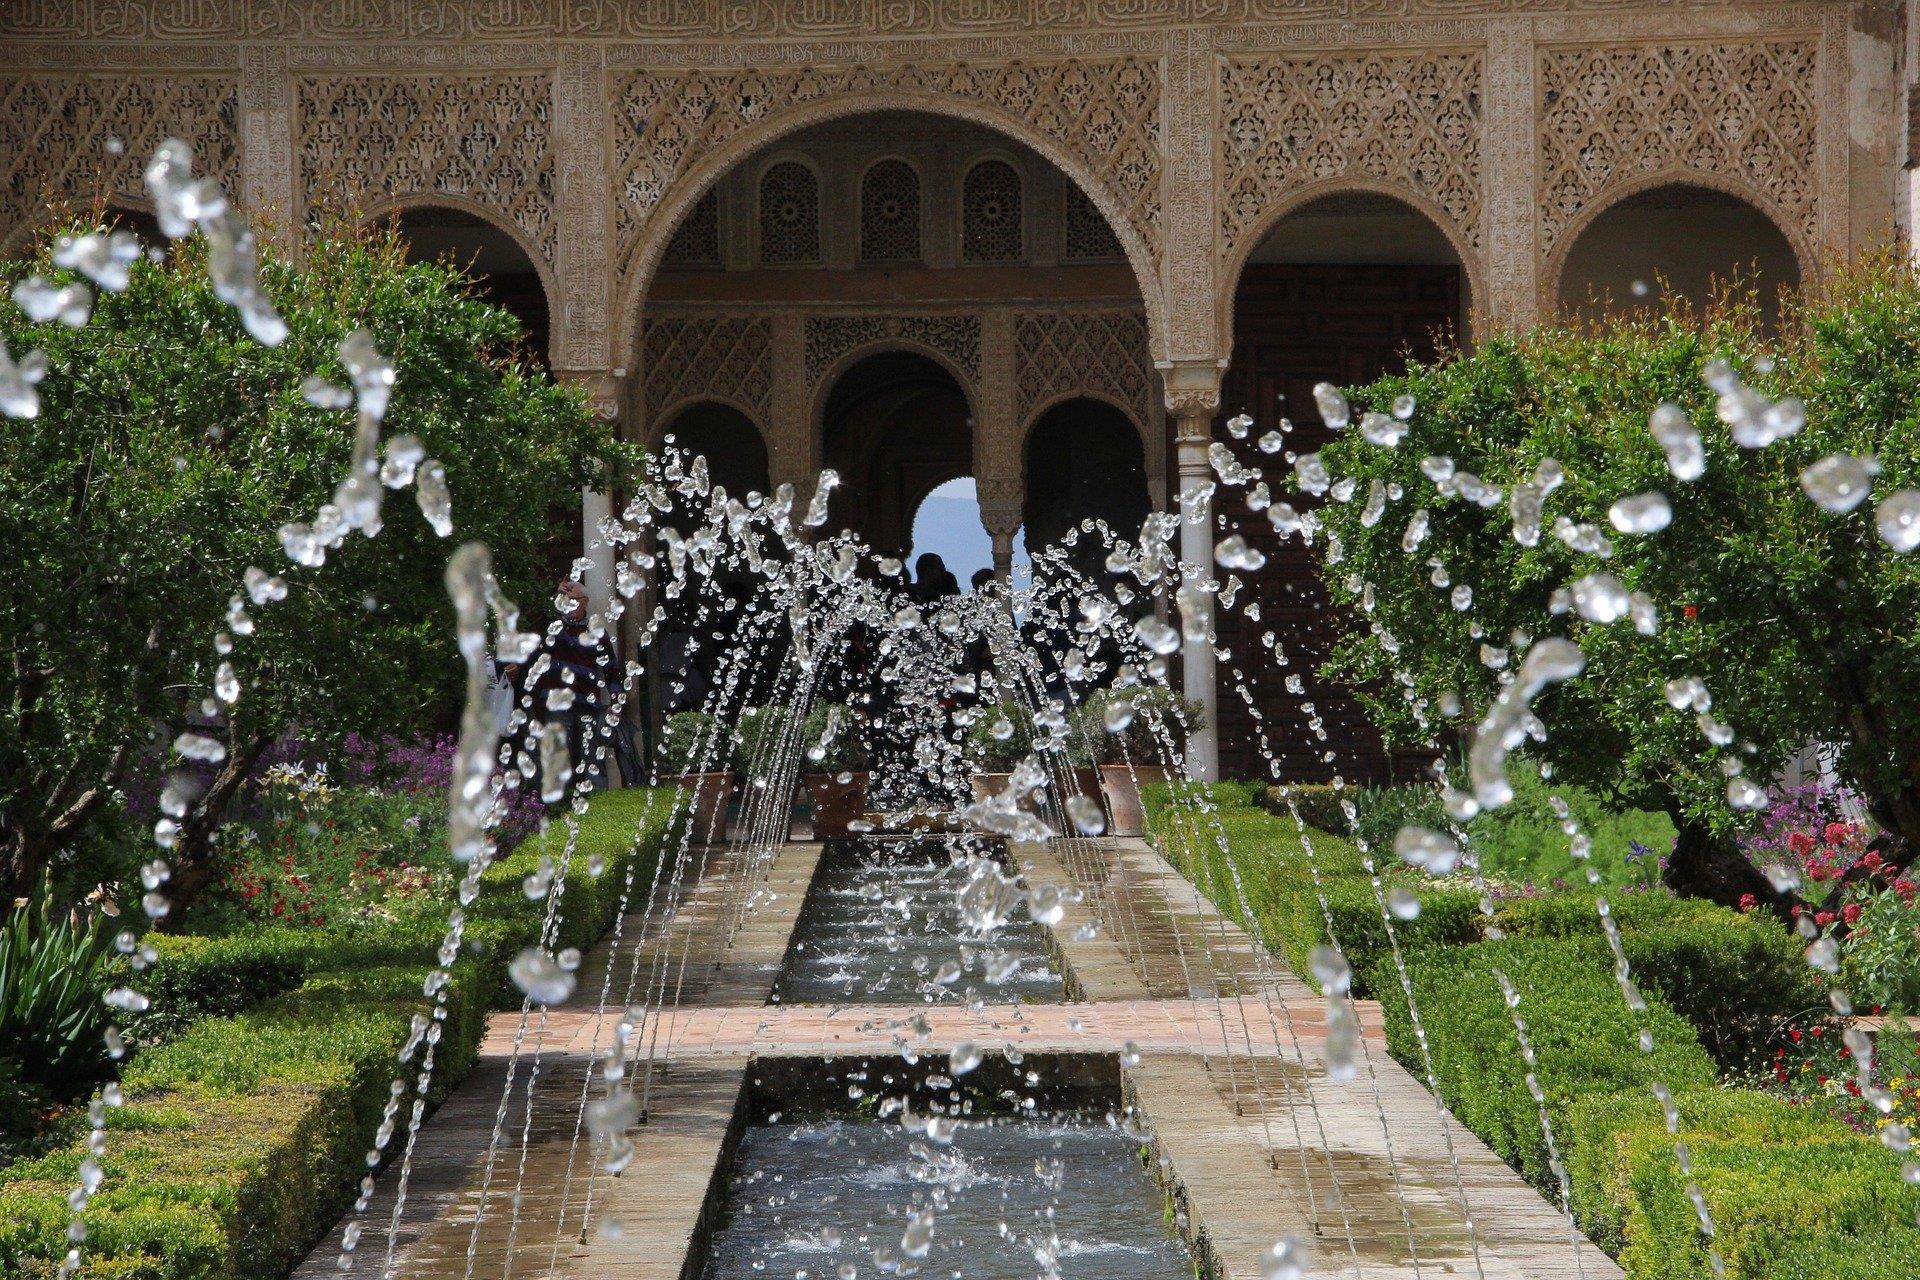 Entrada-con-visita-a-la-Alhambra-y-Generalife-1